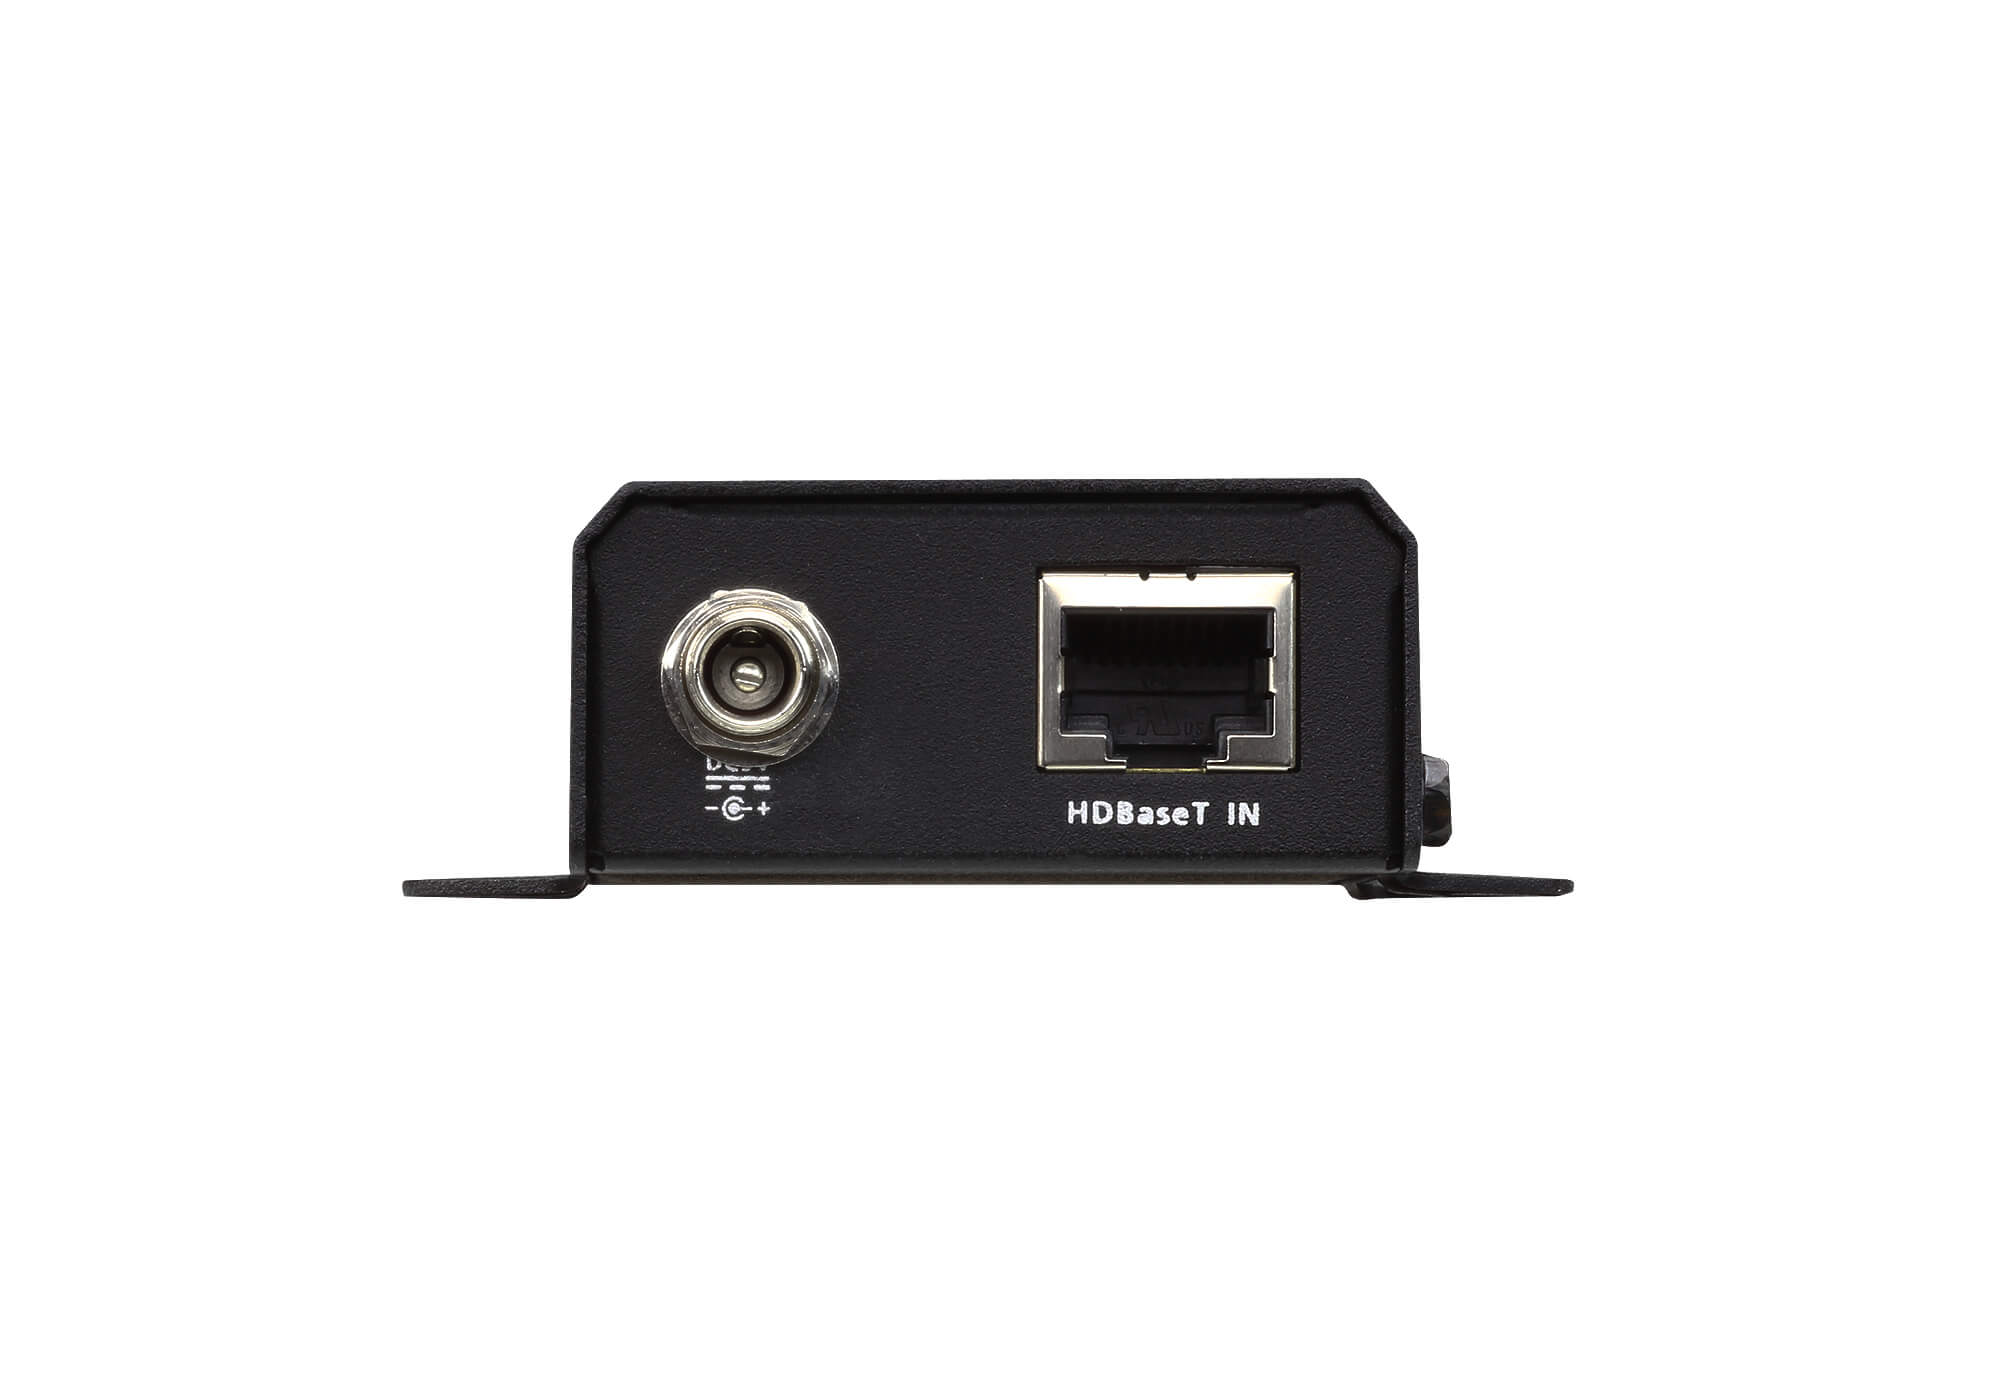 取寄 ATEN VE811R HDMIツイストペアケーブルエクステンダー(4K対応) レシーバー